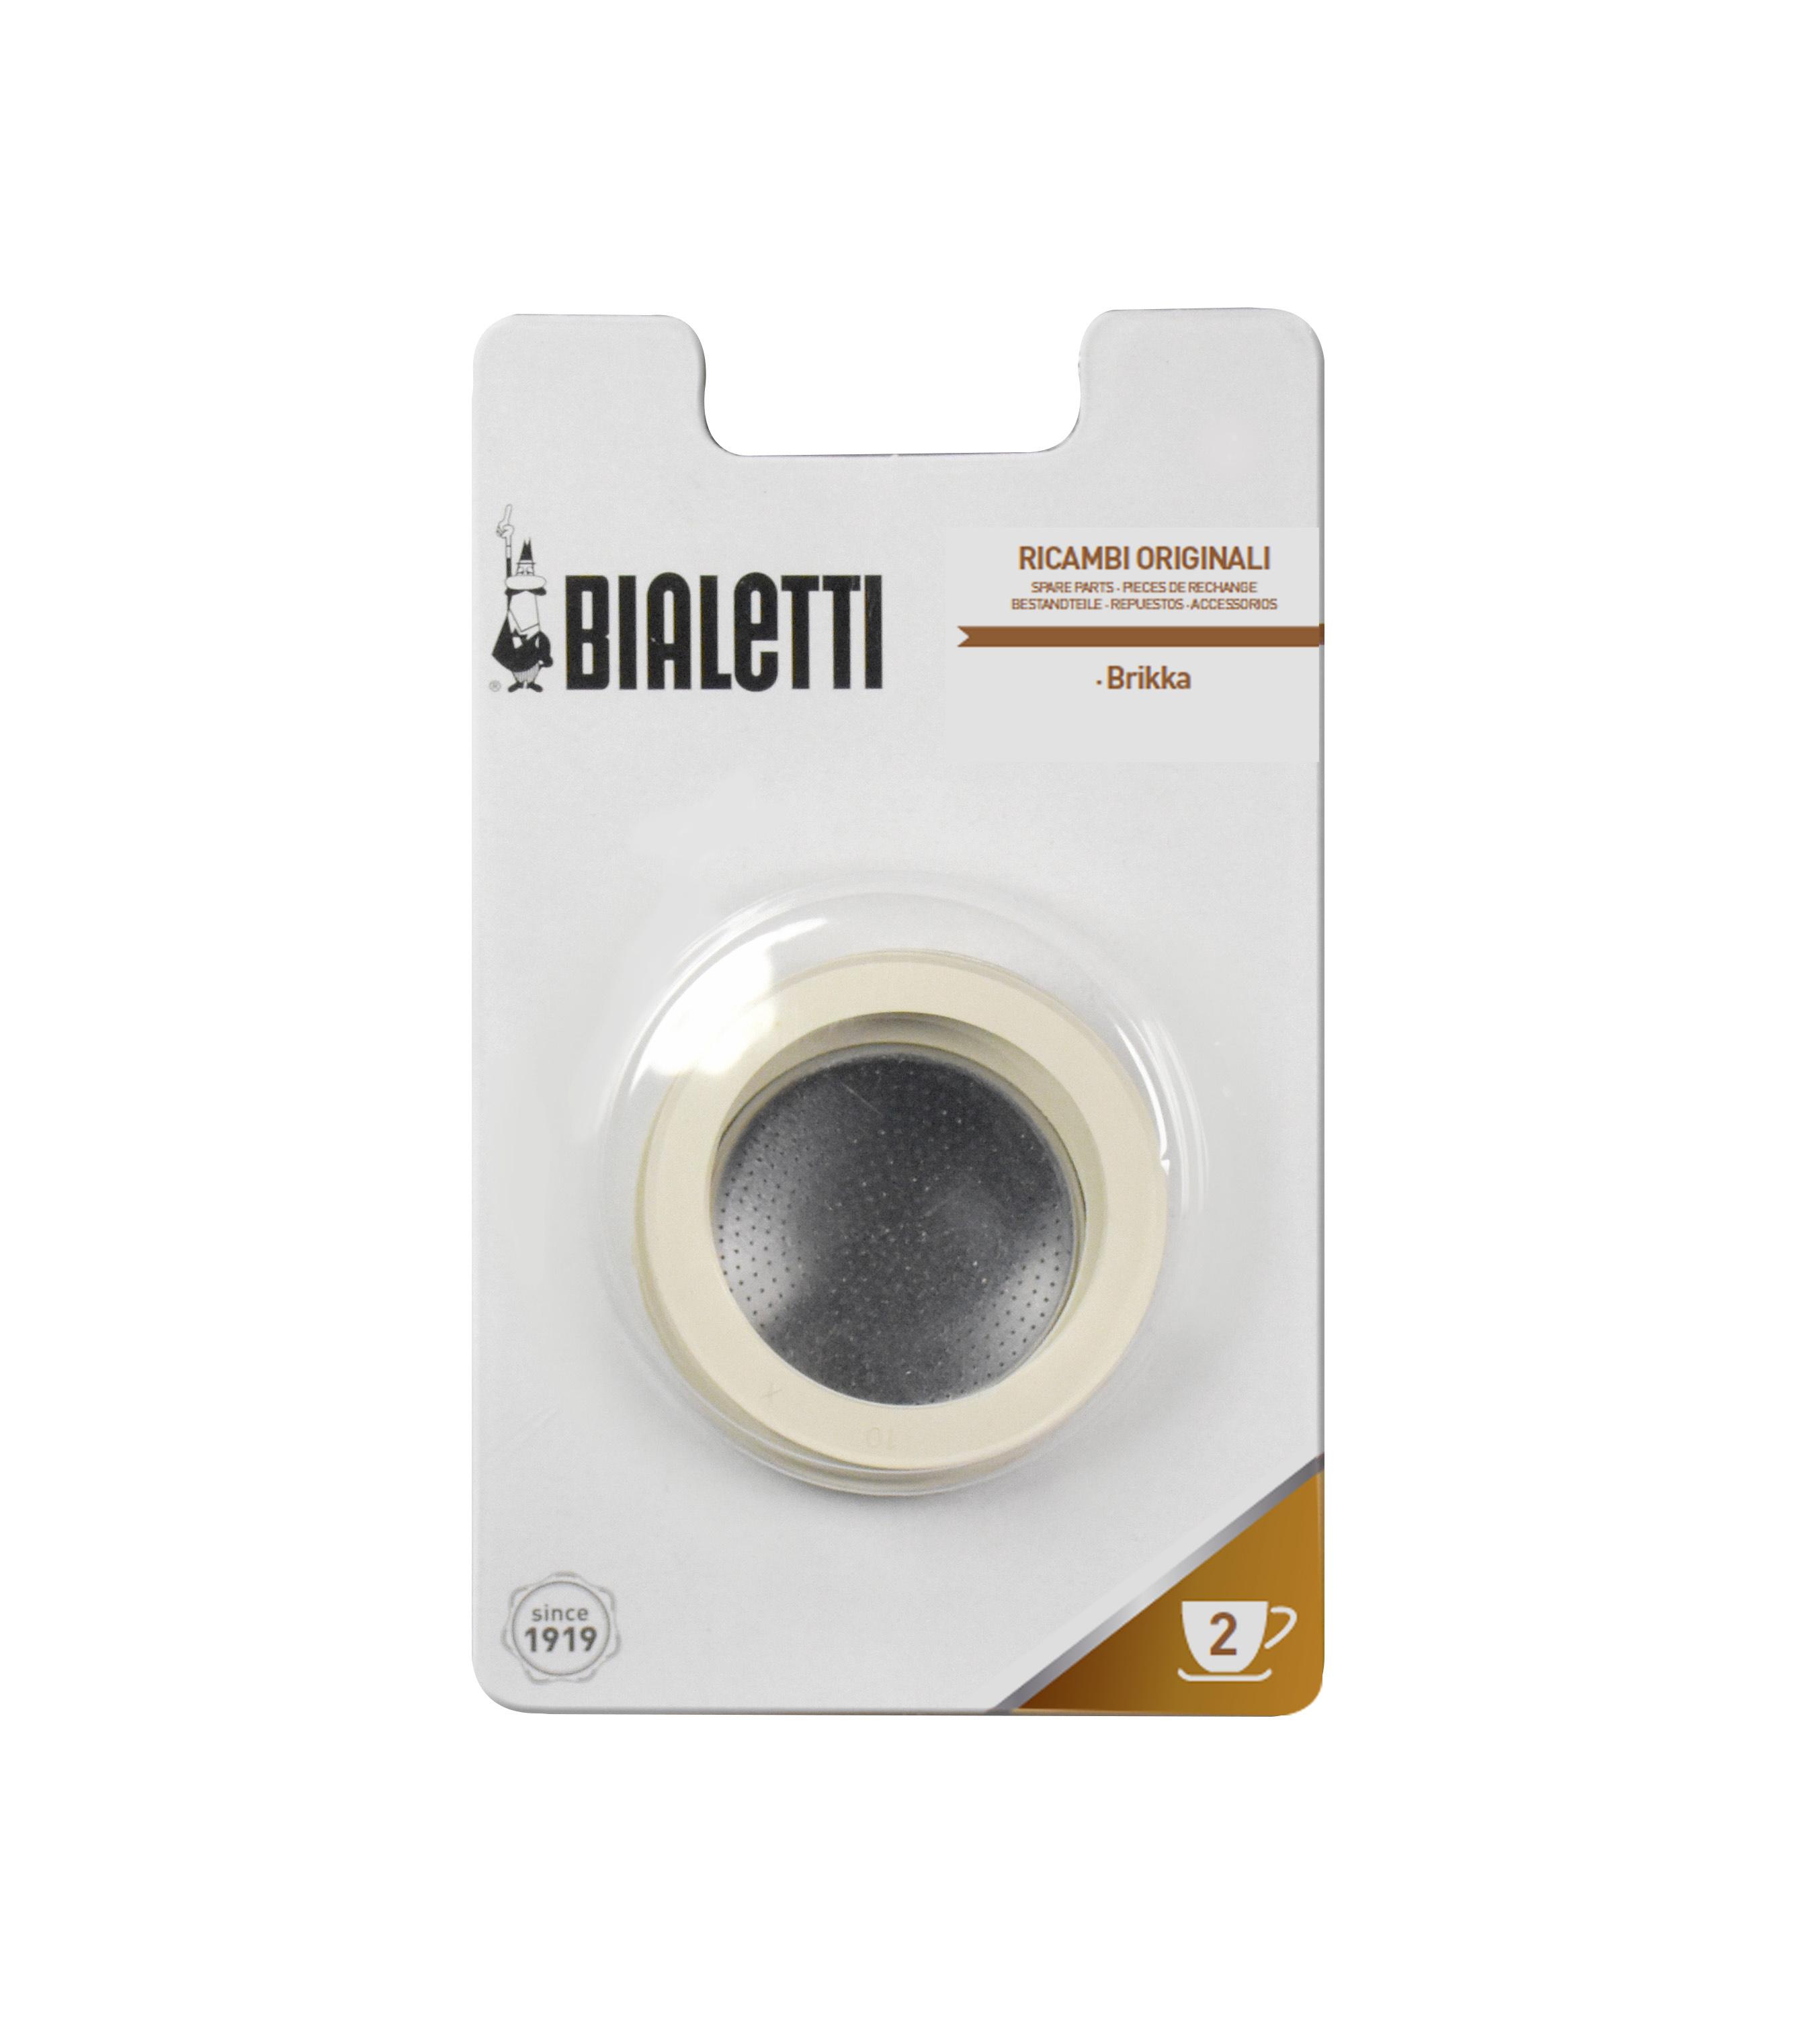 Уплотнитель Bialetti для Brikka на 2 порции 3 шт. + фильтр 1 шт.